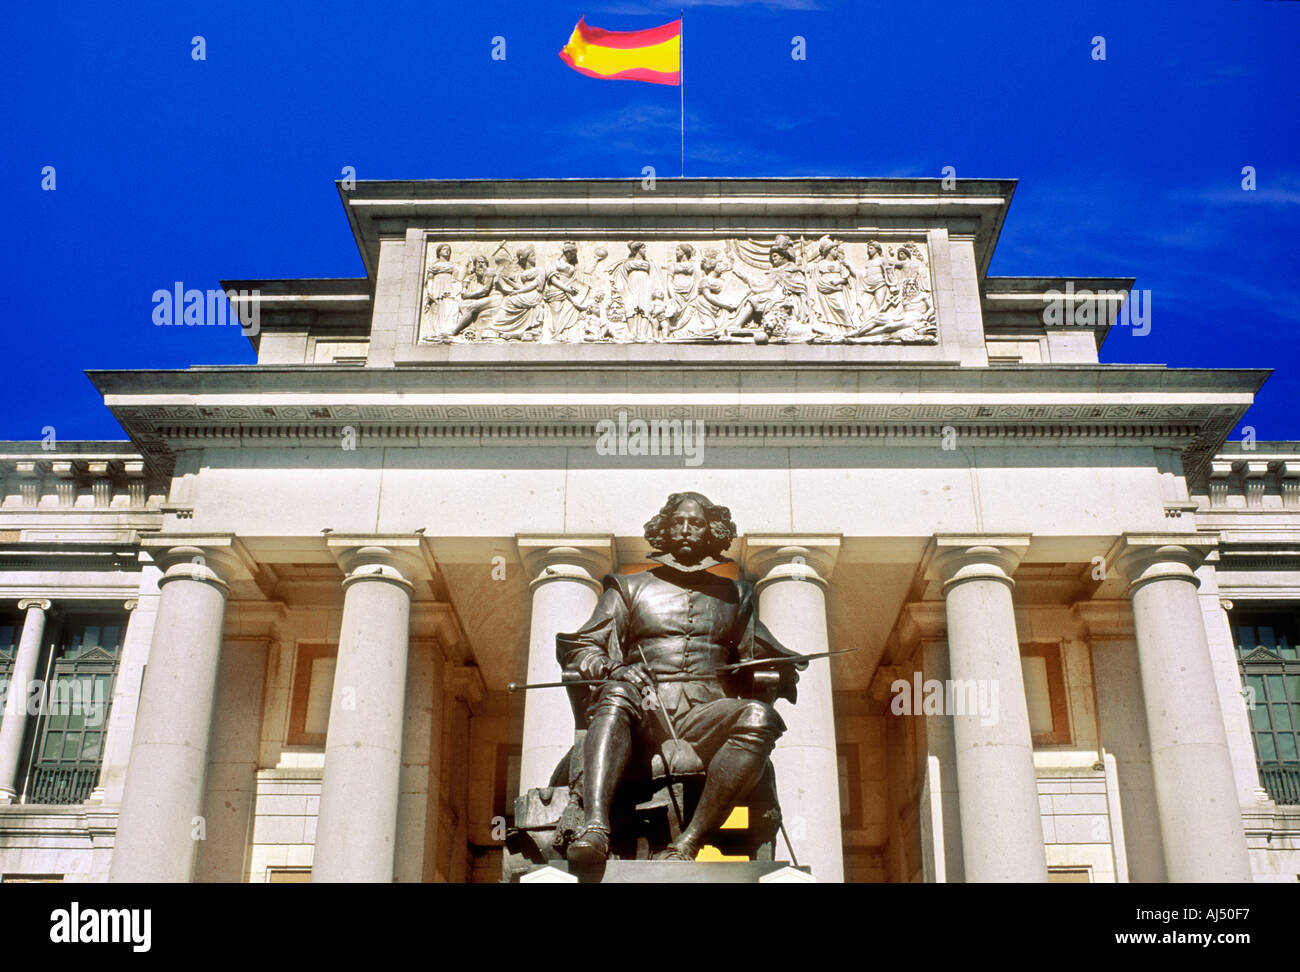 STATUE OF VELASQUEZ PRADO MUSEUM MADRID SPAIN Stock Photo